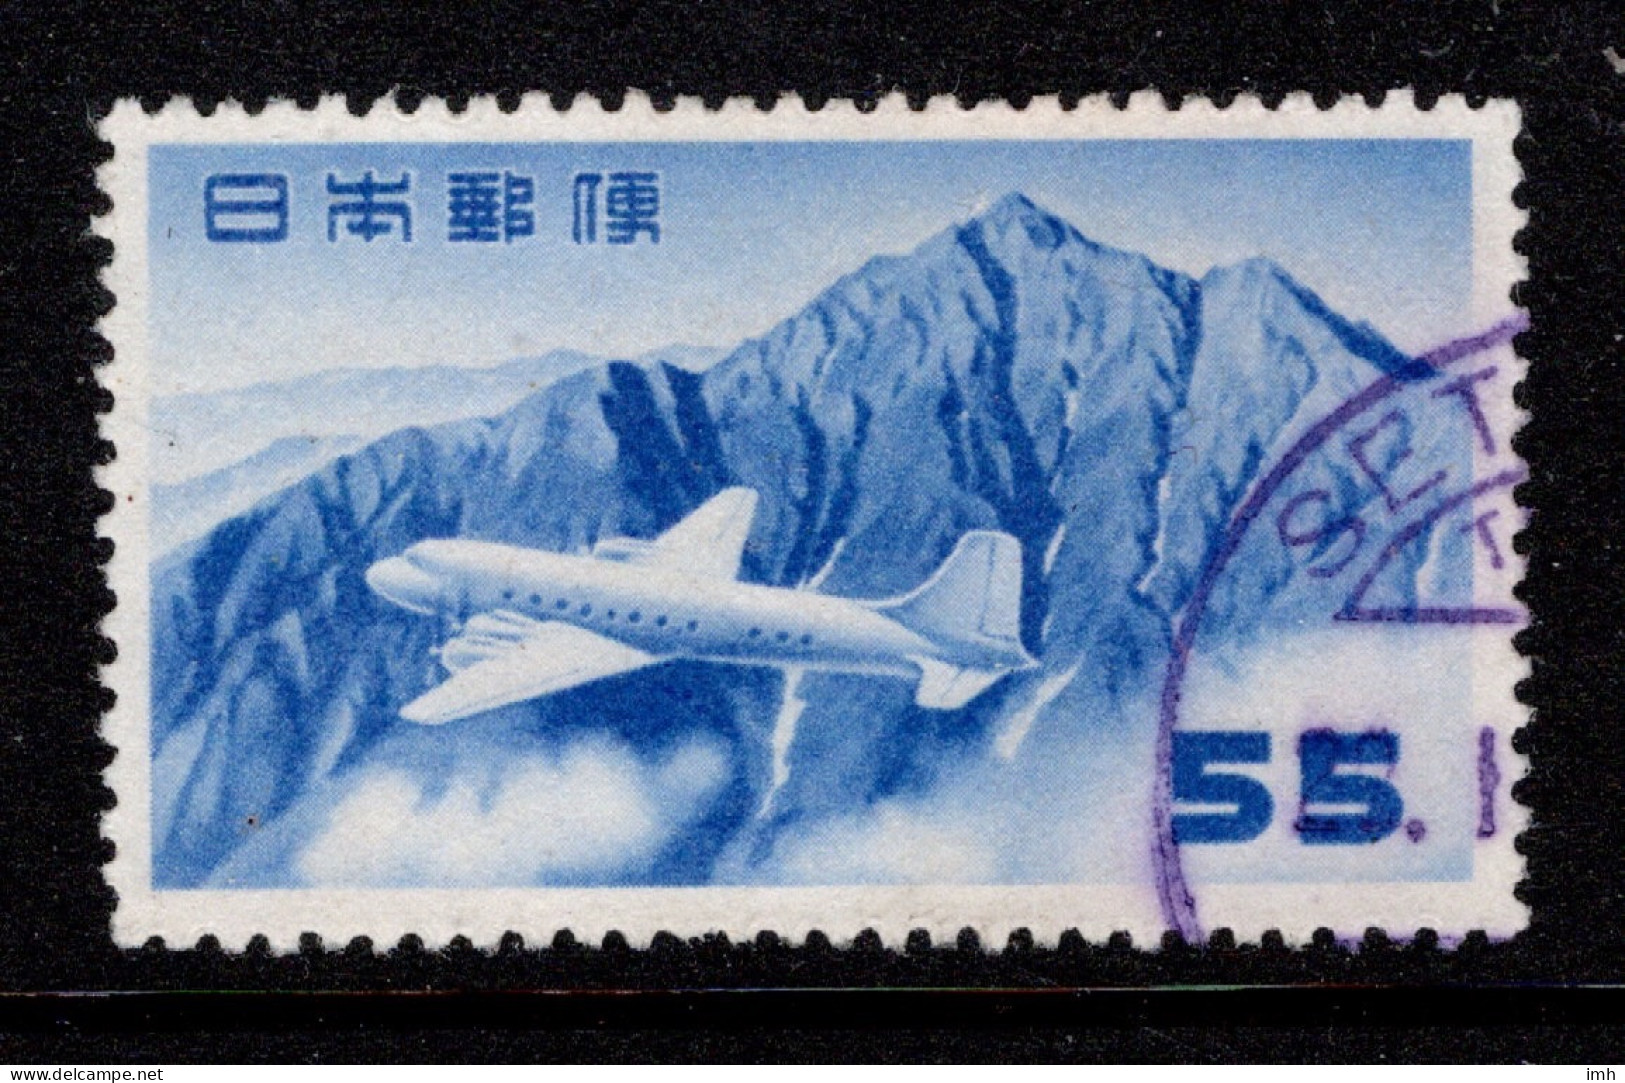 1952 Japan Airmail Air Post Sc# C30 - Poste Aérienne